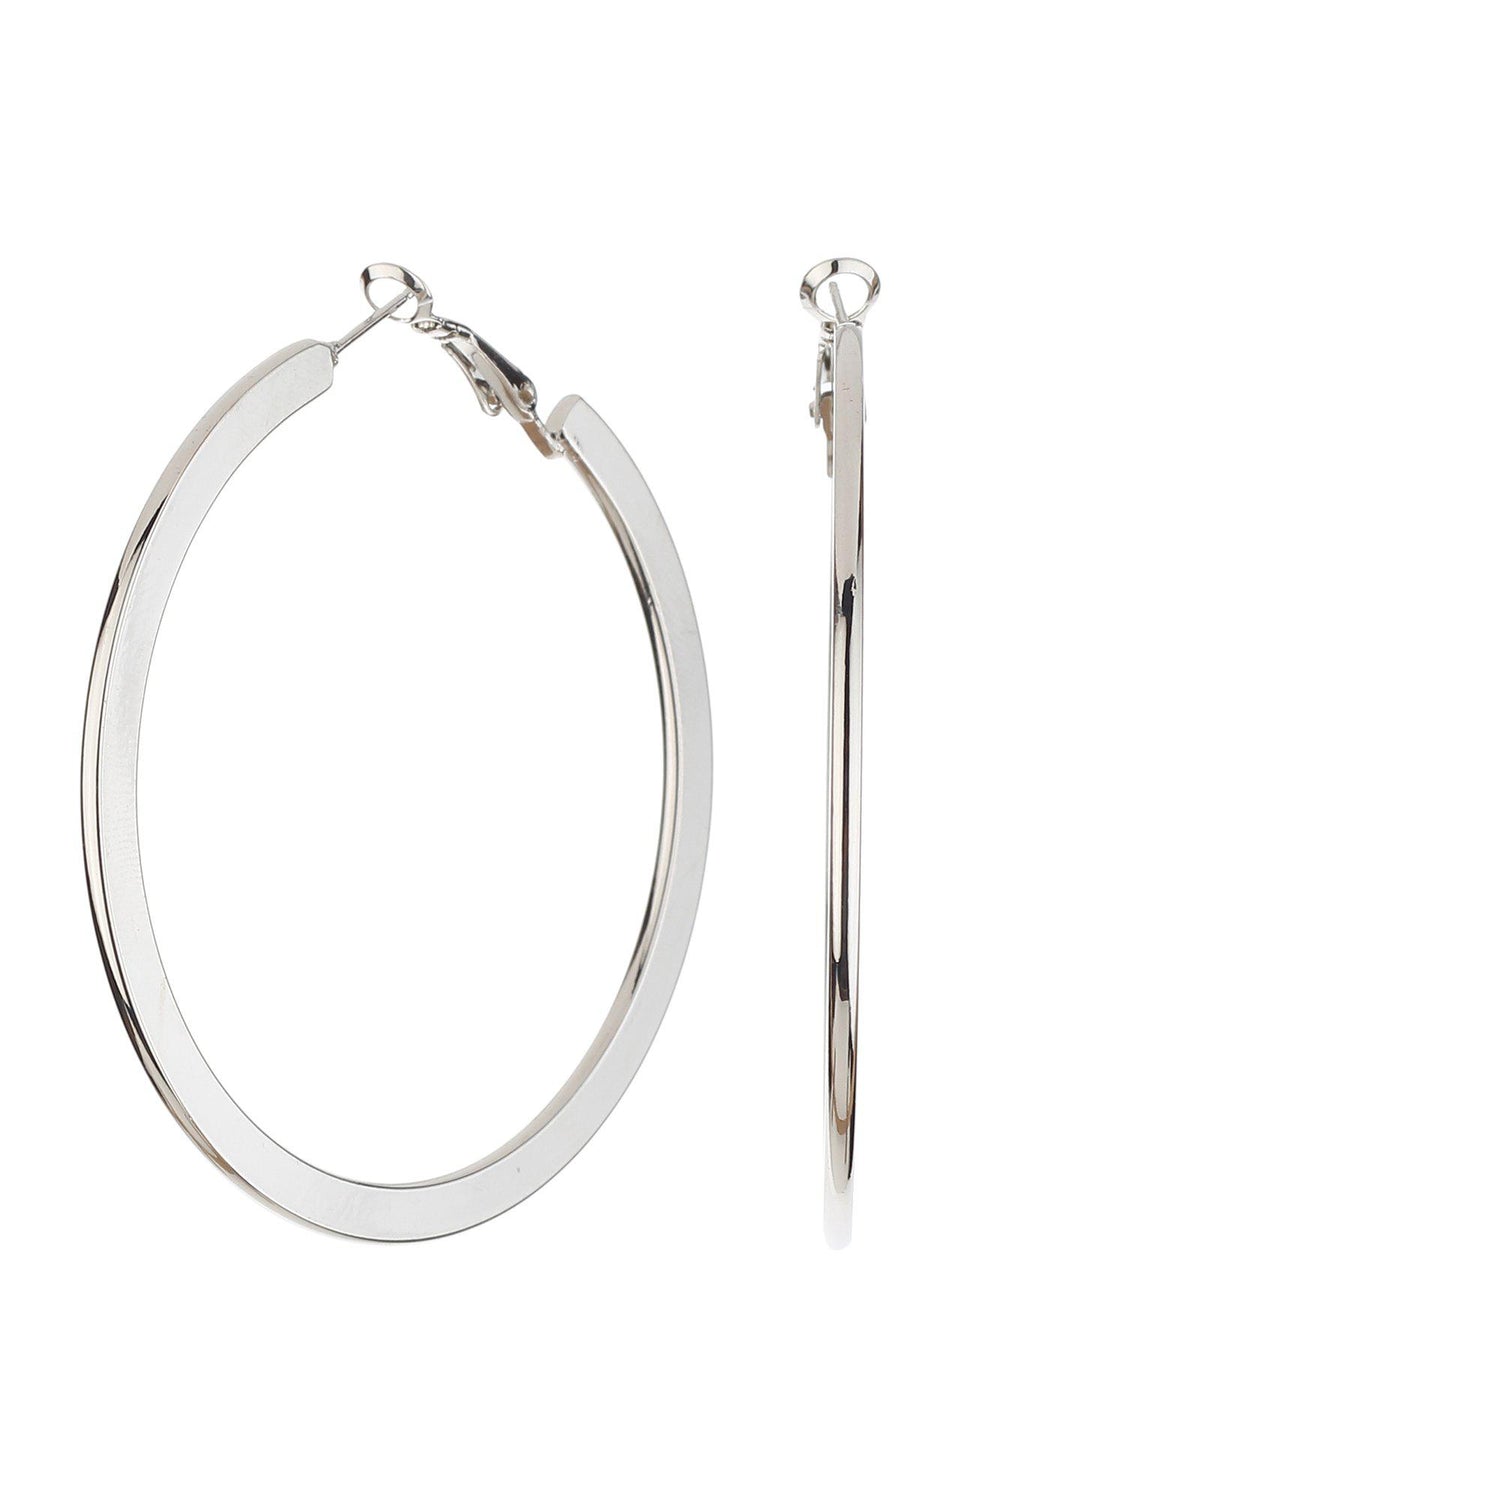 Designer Korean Circle Hoop Earrings-Earrings-ONESKYSHOP